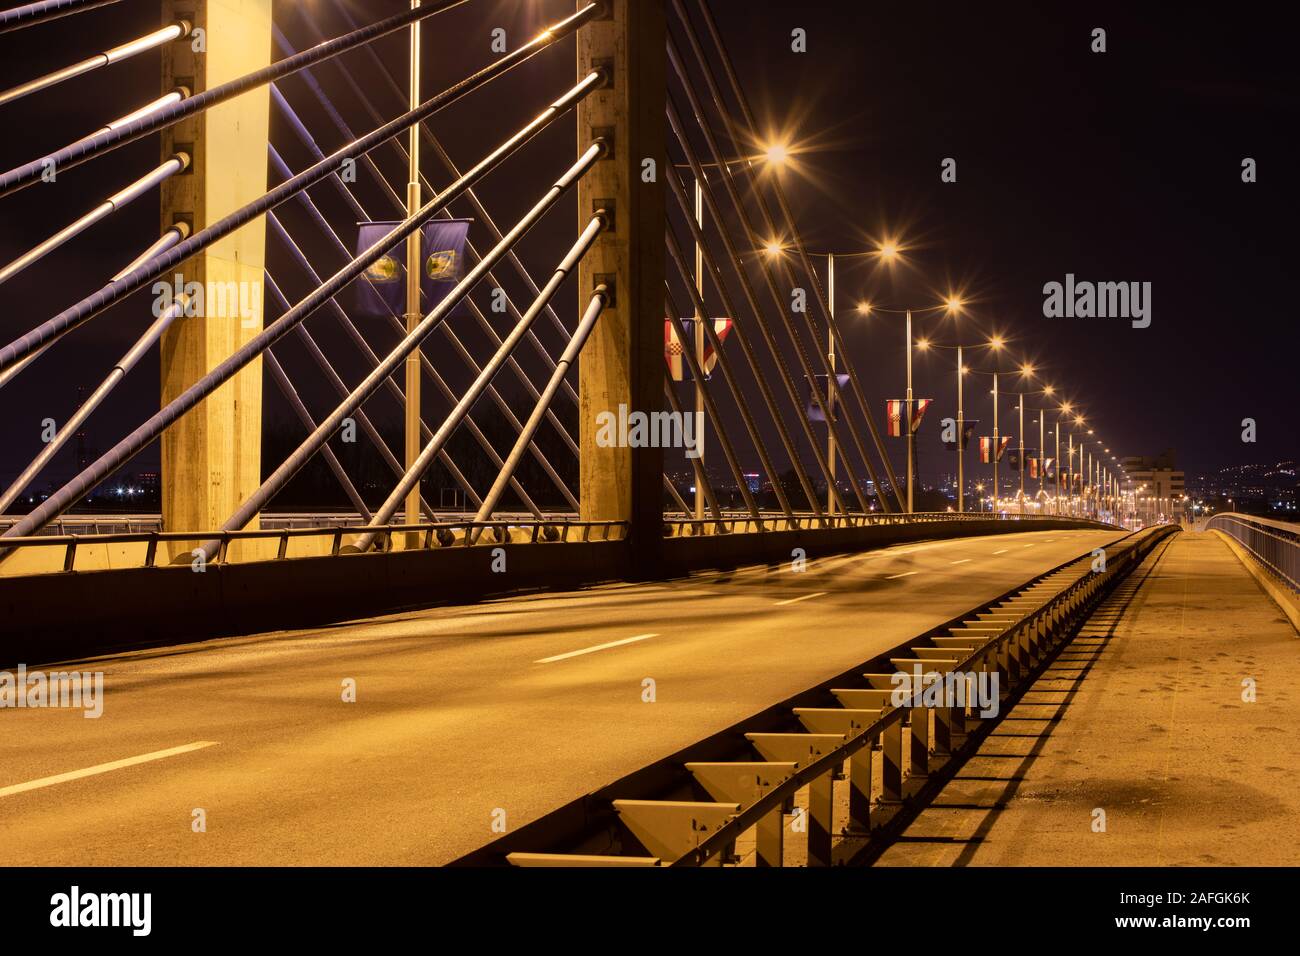 Domovinski bridge by night in town Zagreb, Croatia Stock Photo